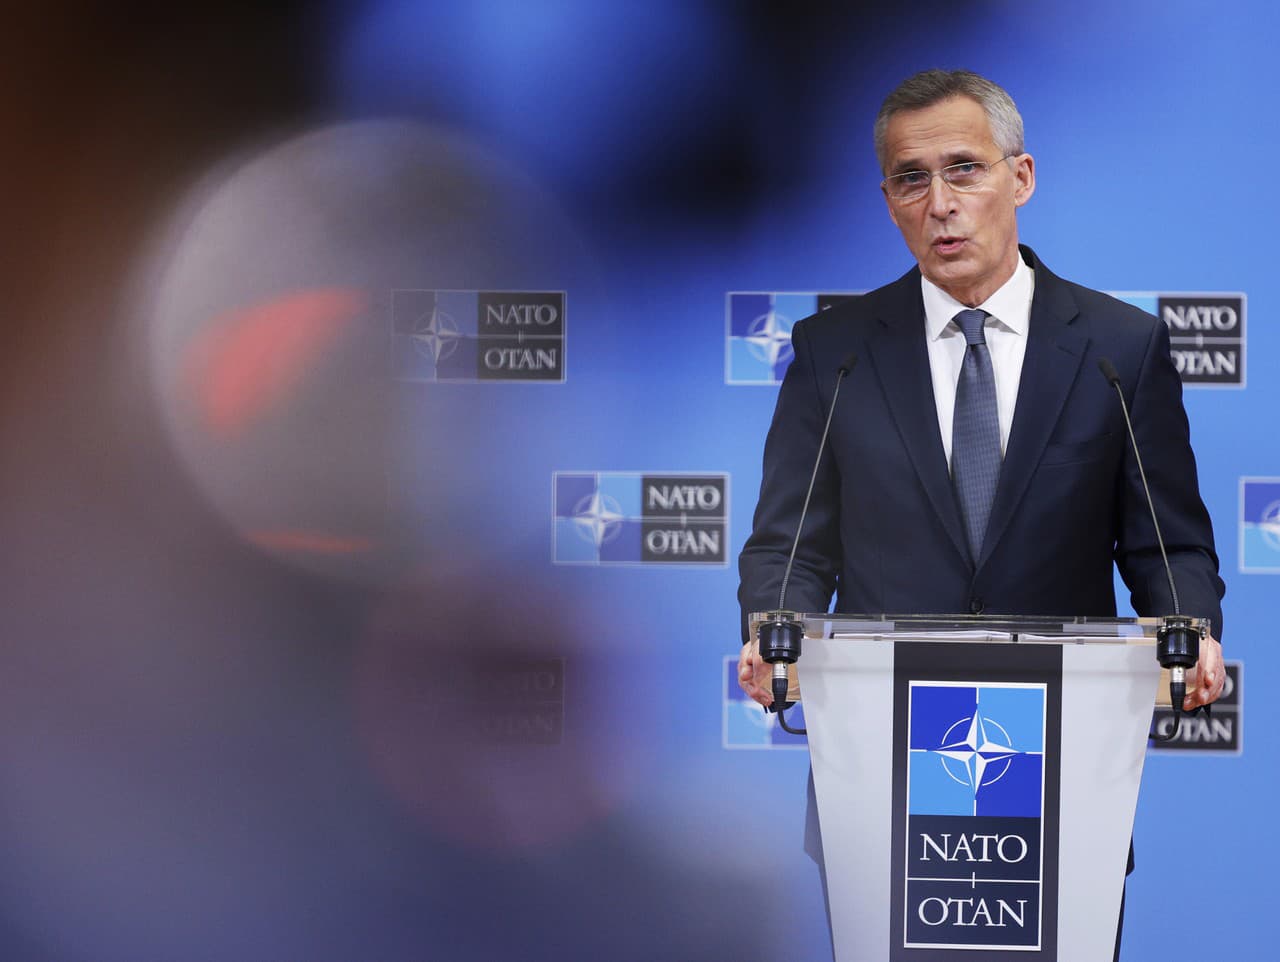 Ministri zahraničných vecí NATO mimoriadne rokovali o Rusku i Ukrajine